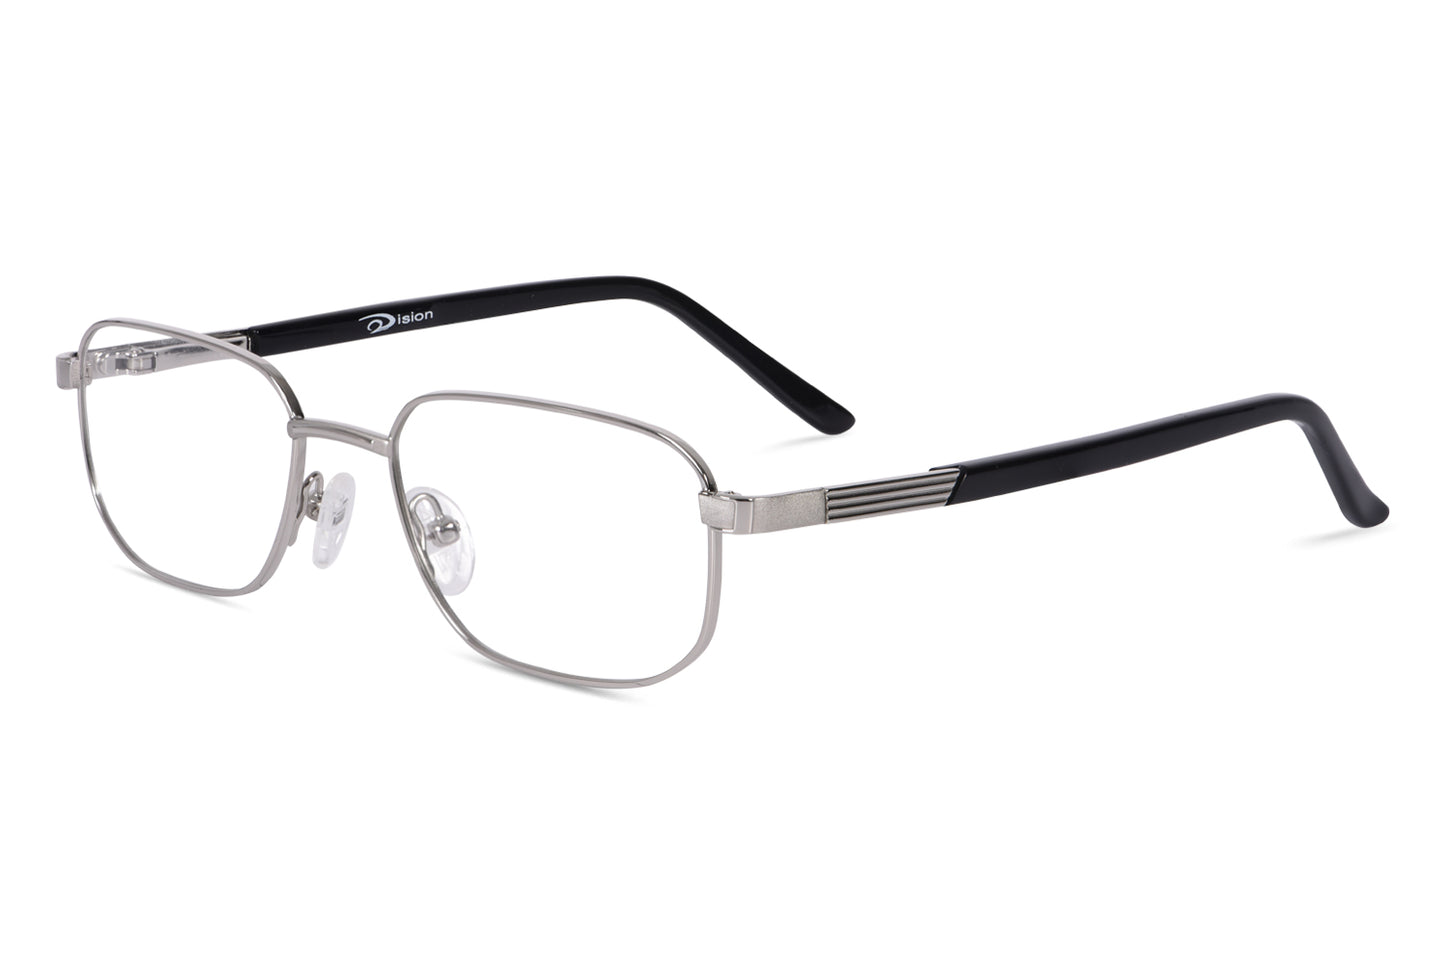 mens-square-frame-glasses